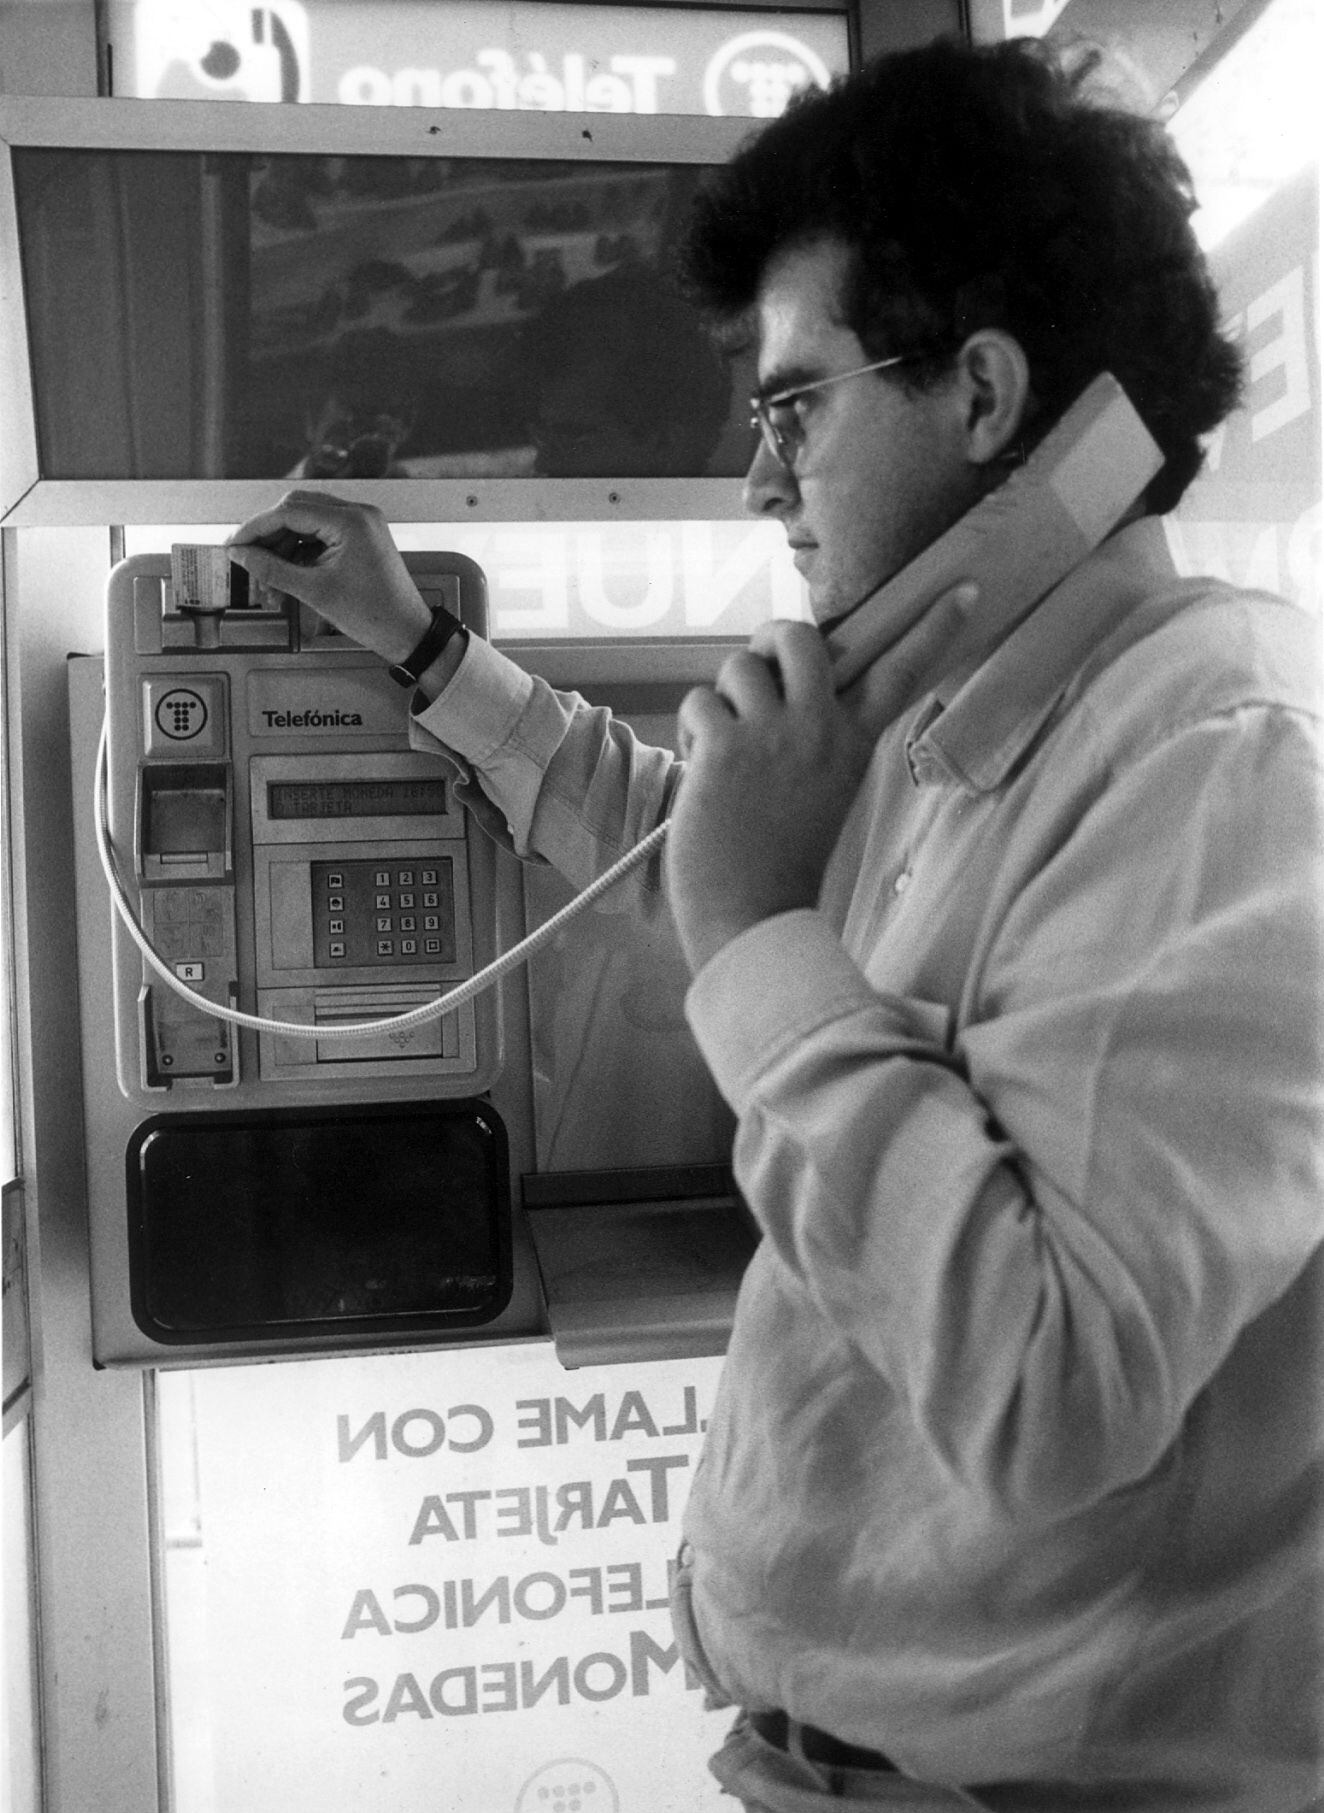 Un usuario se dispone a usar una nueva cabina de Telefónica fabricada para evitar robos y actos vandálicos en 1991.